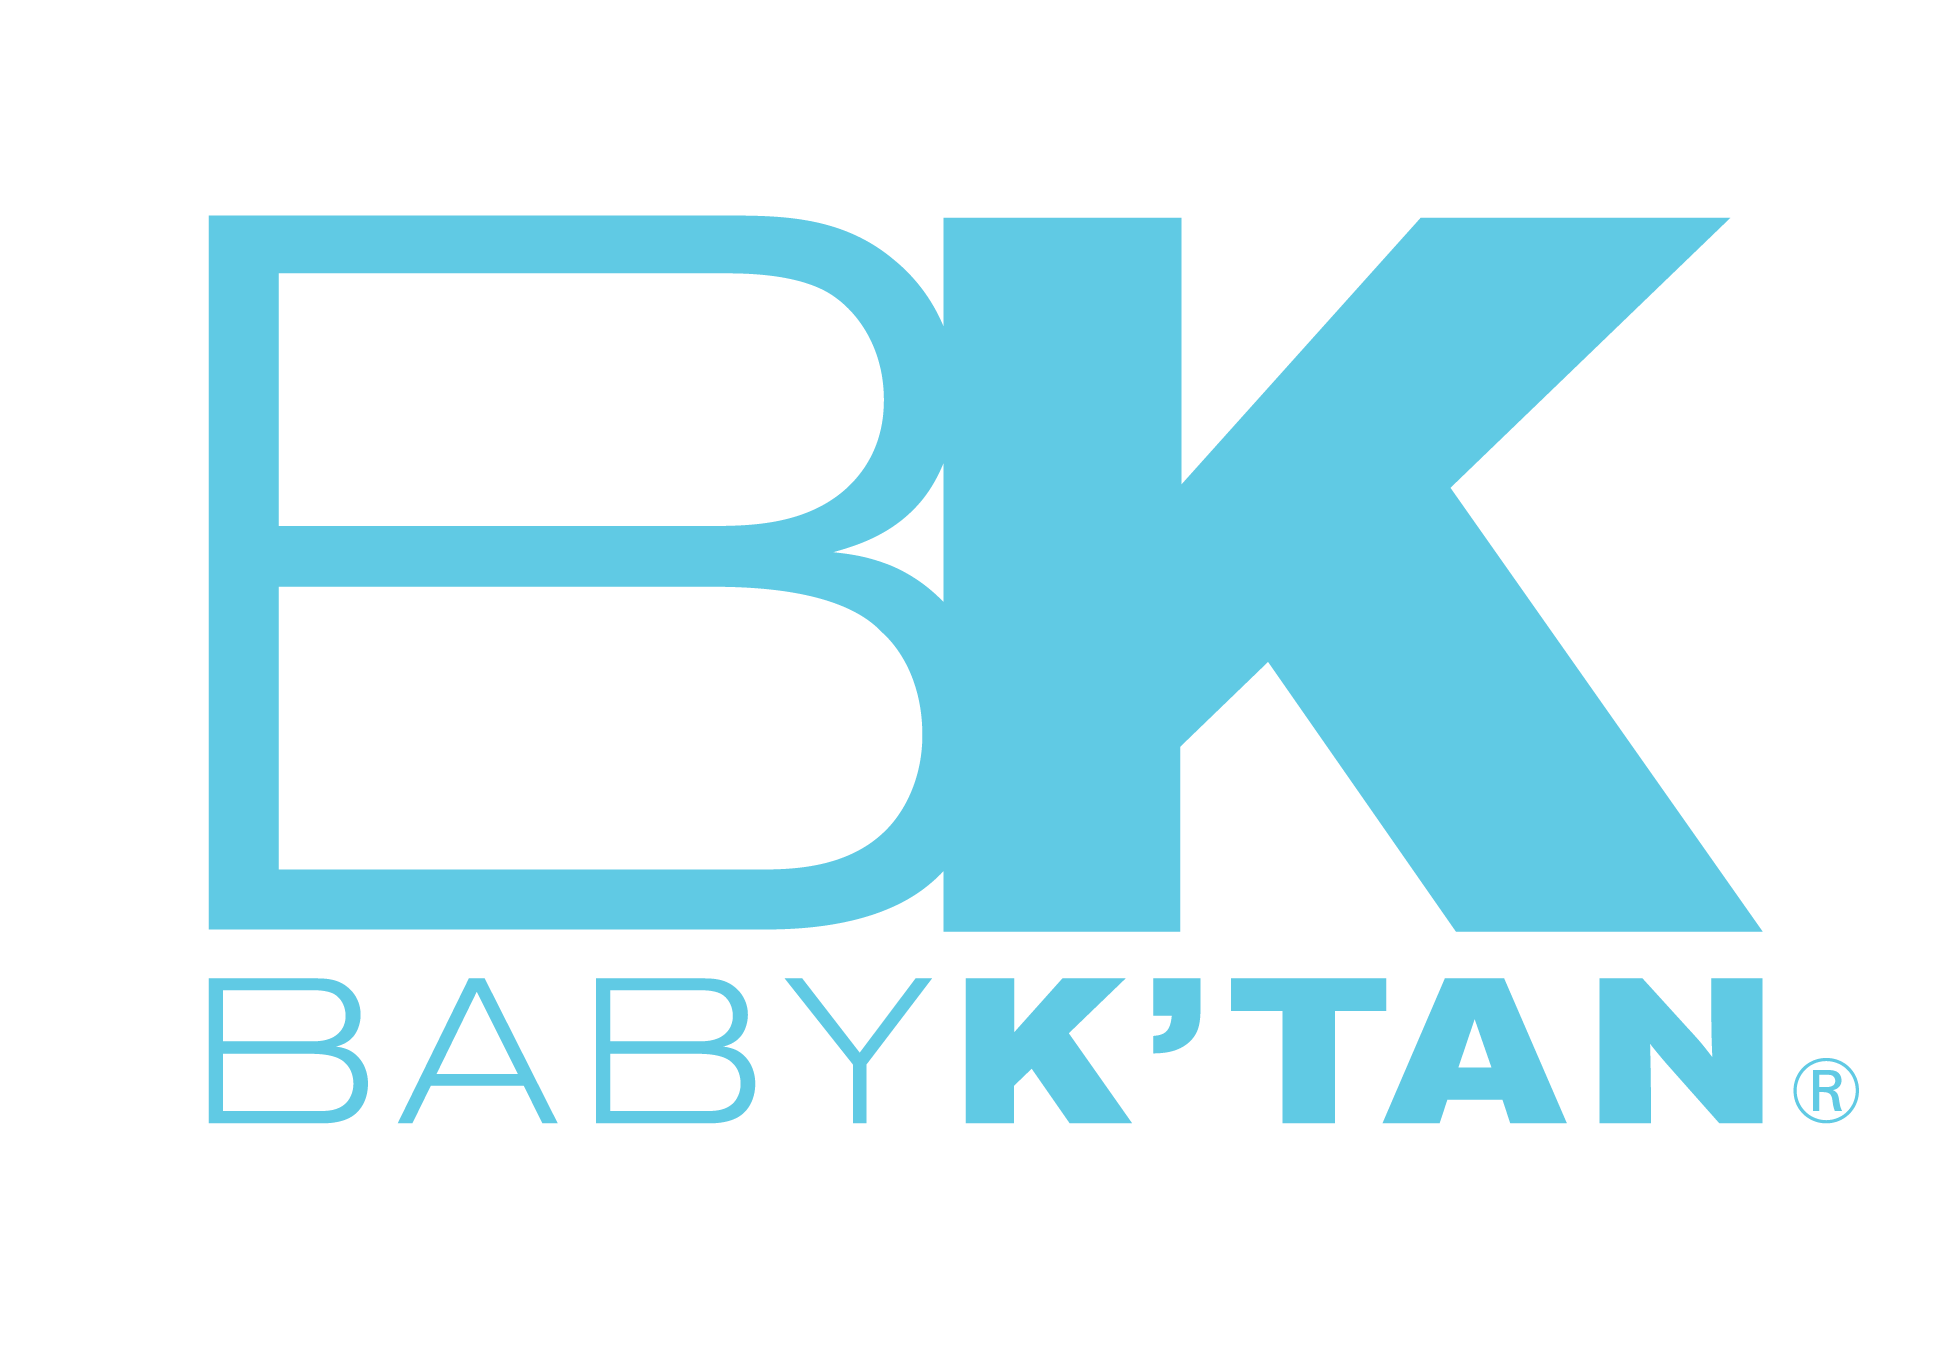 Baby K’tan 